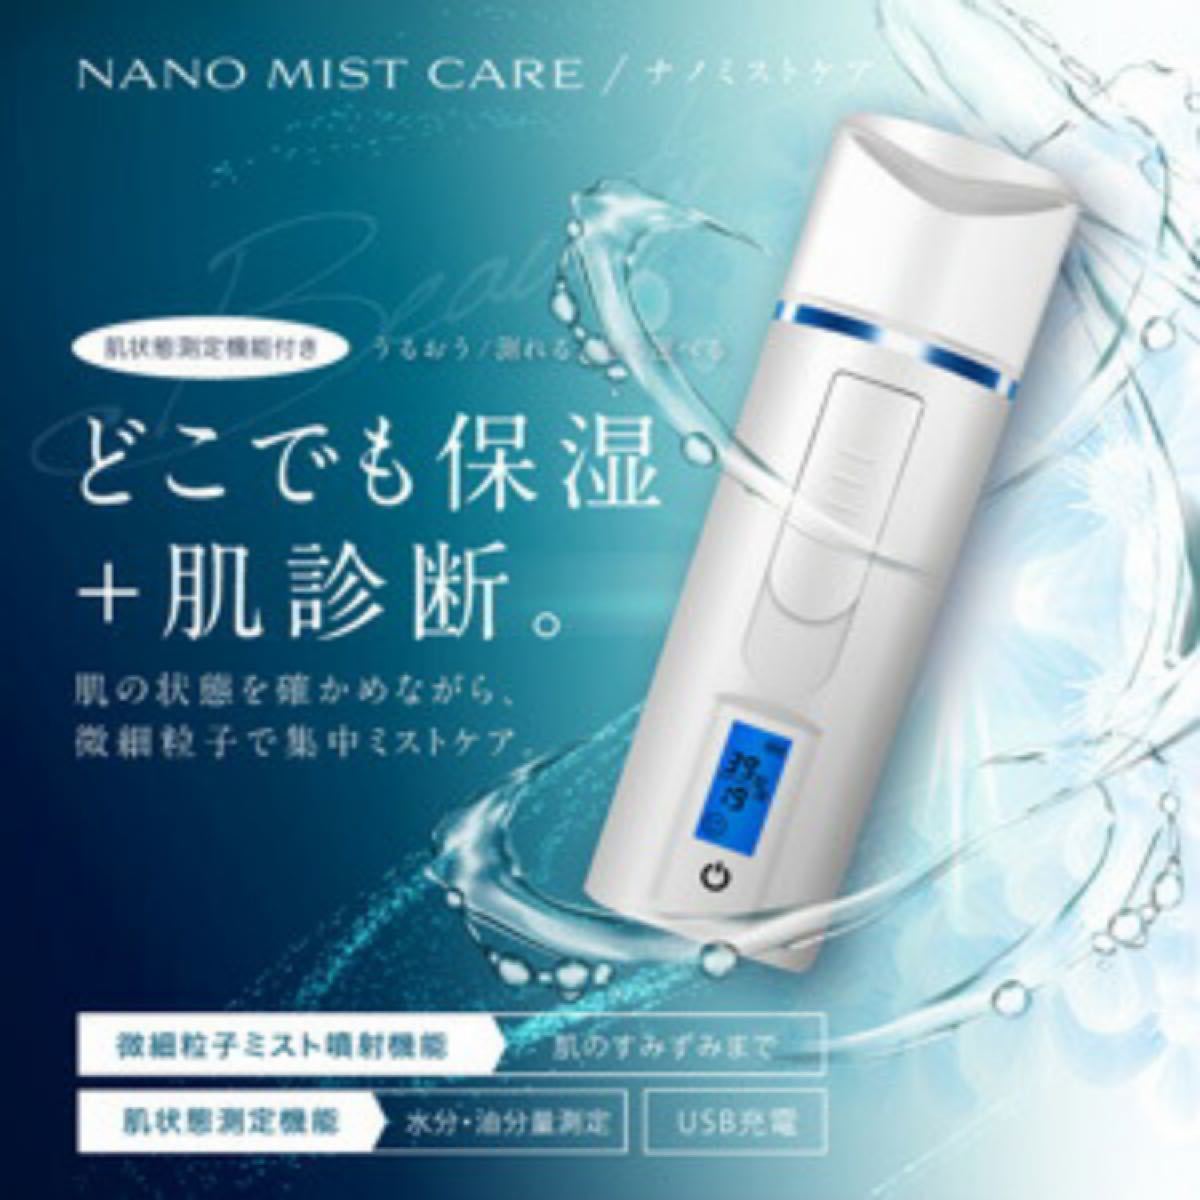 ハンディミスト ナノミストケア NANO MIST CARE スチーマー 美顔器 スチーム スチーマー ミスト 肌測定 携帯用